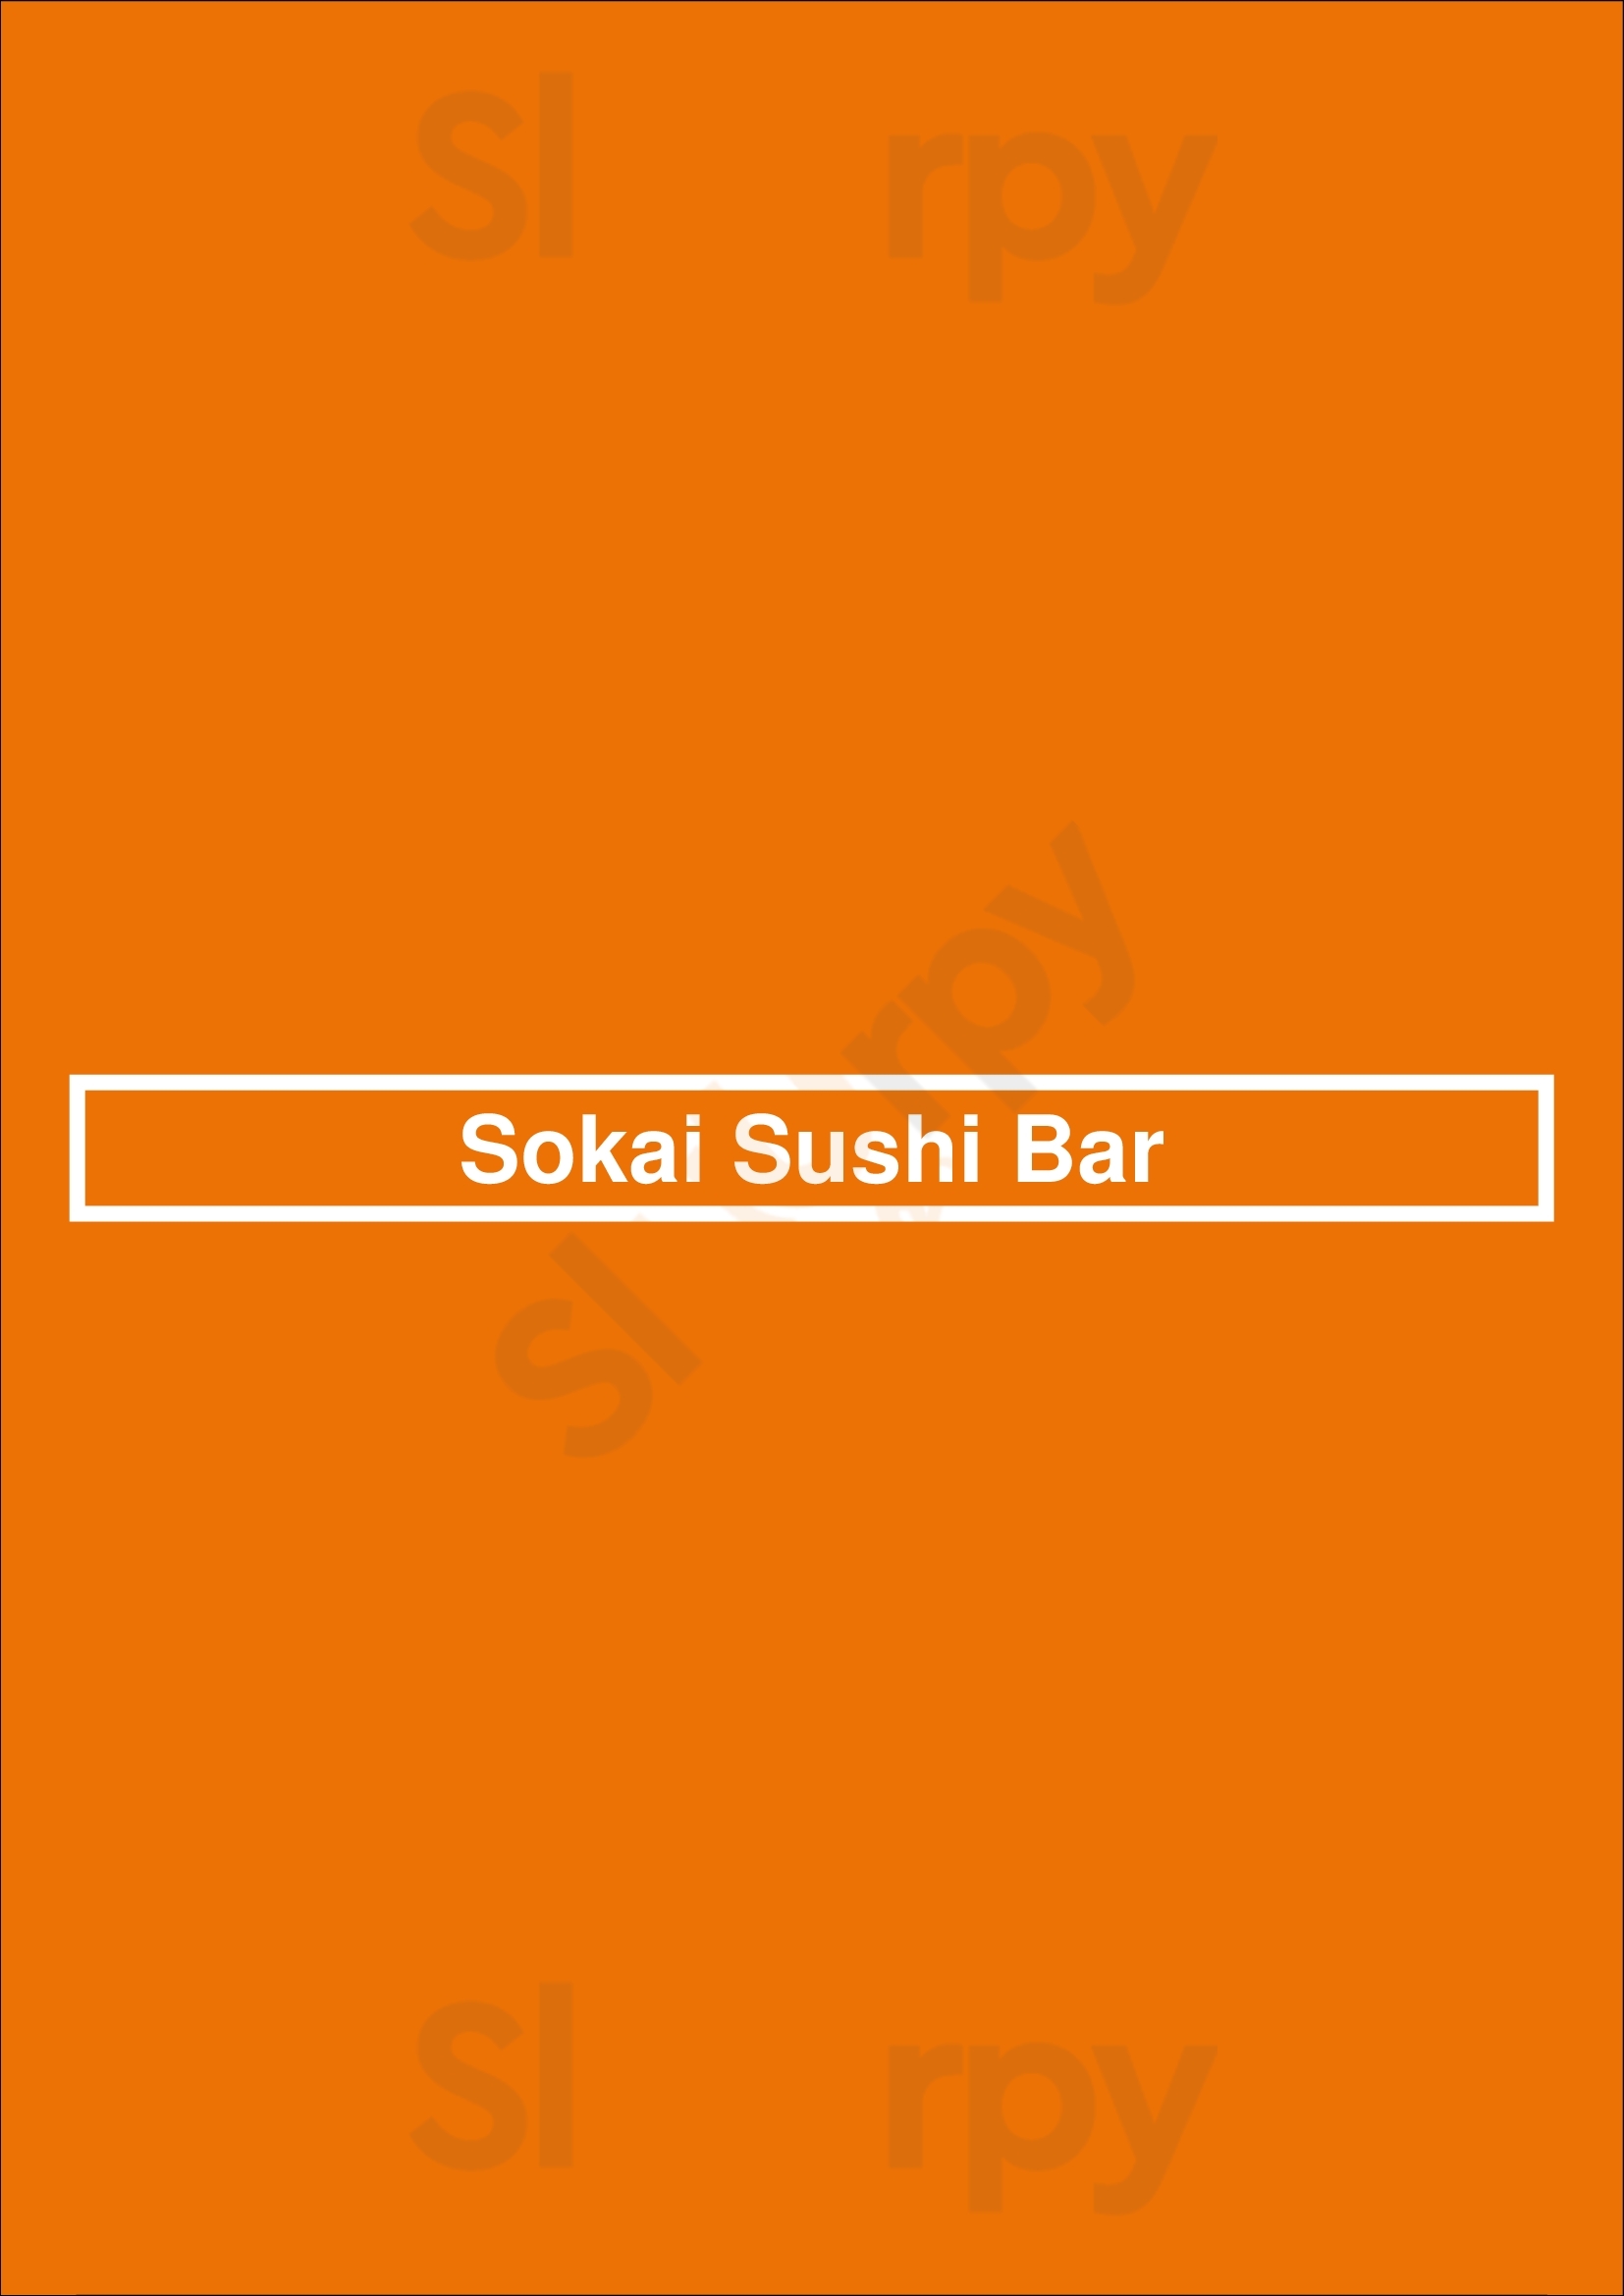 Sokai Sushi Bar Miami Menu - 1